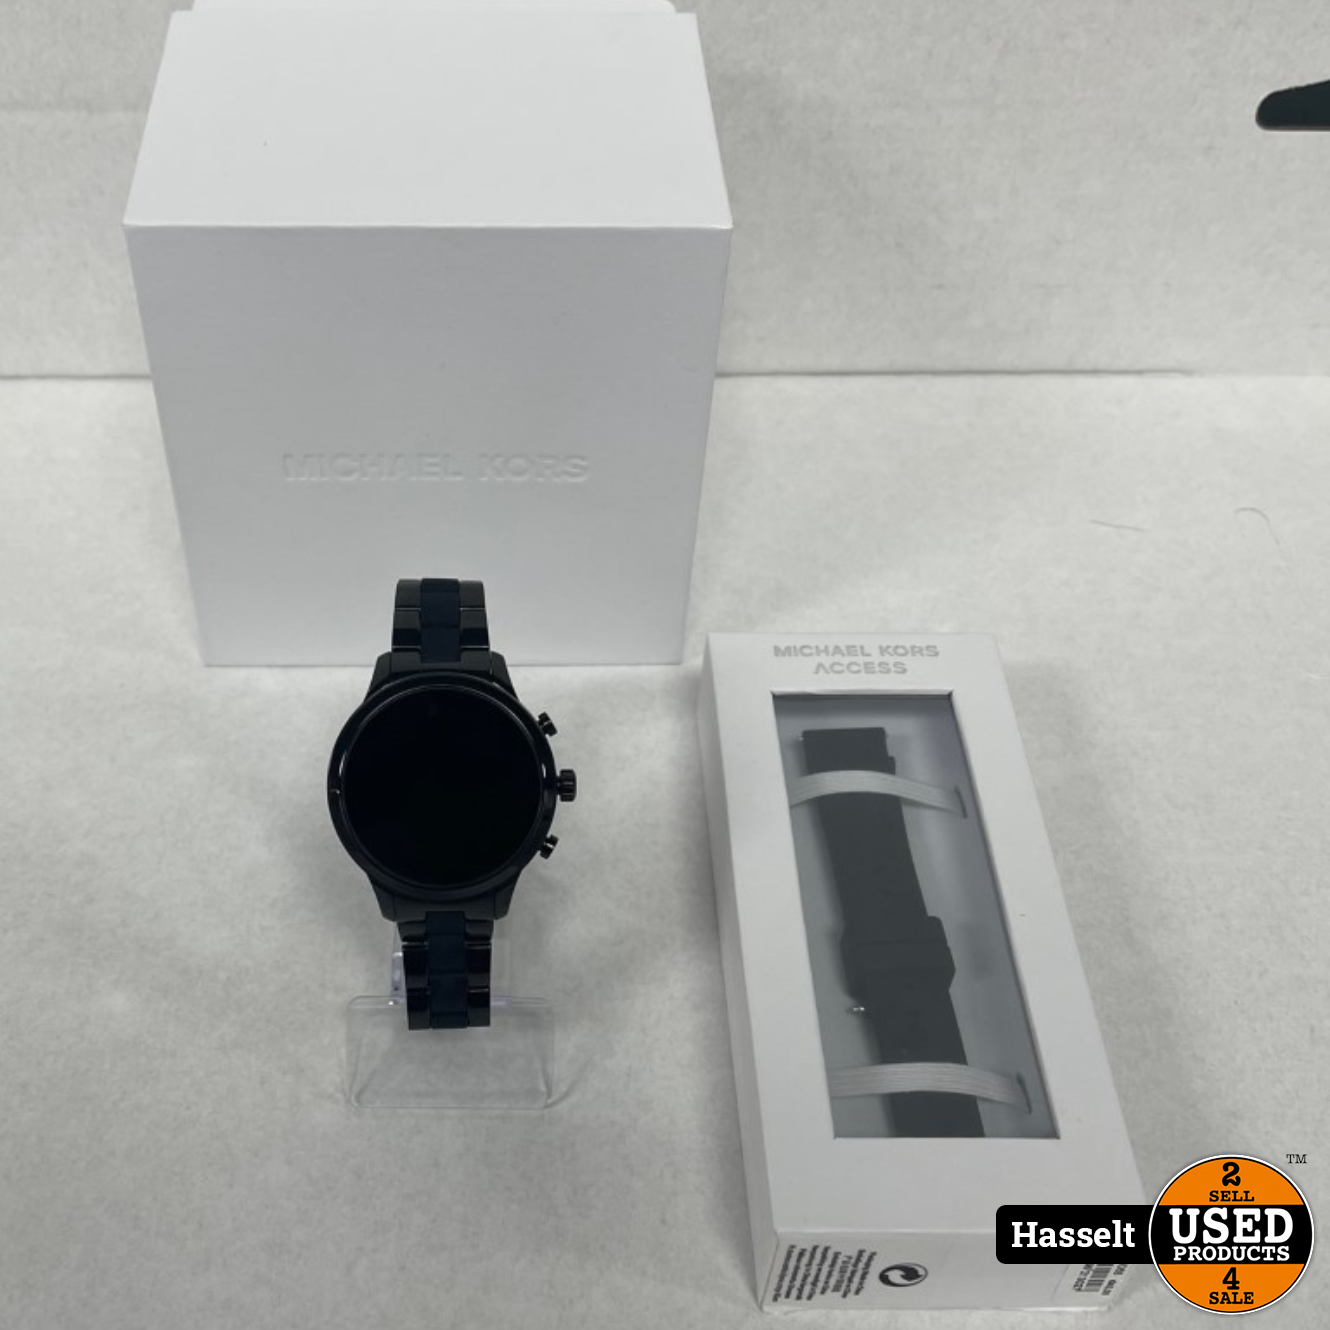 MKT5088 Michael Kors Access Bradshaw Gen 5 Display Smartwatch online kopen   Juwelen Nevejan